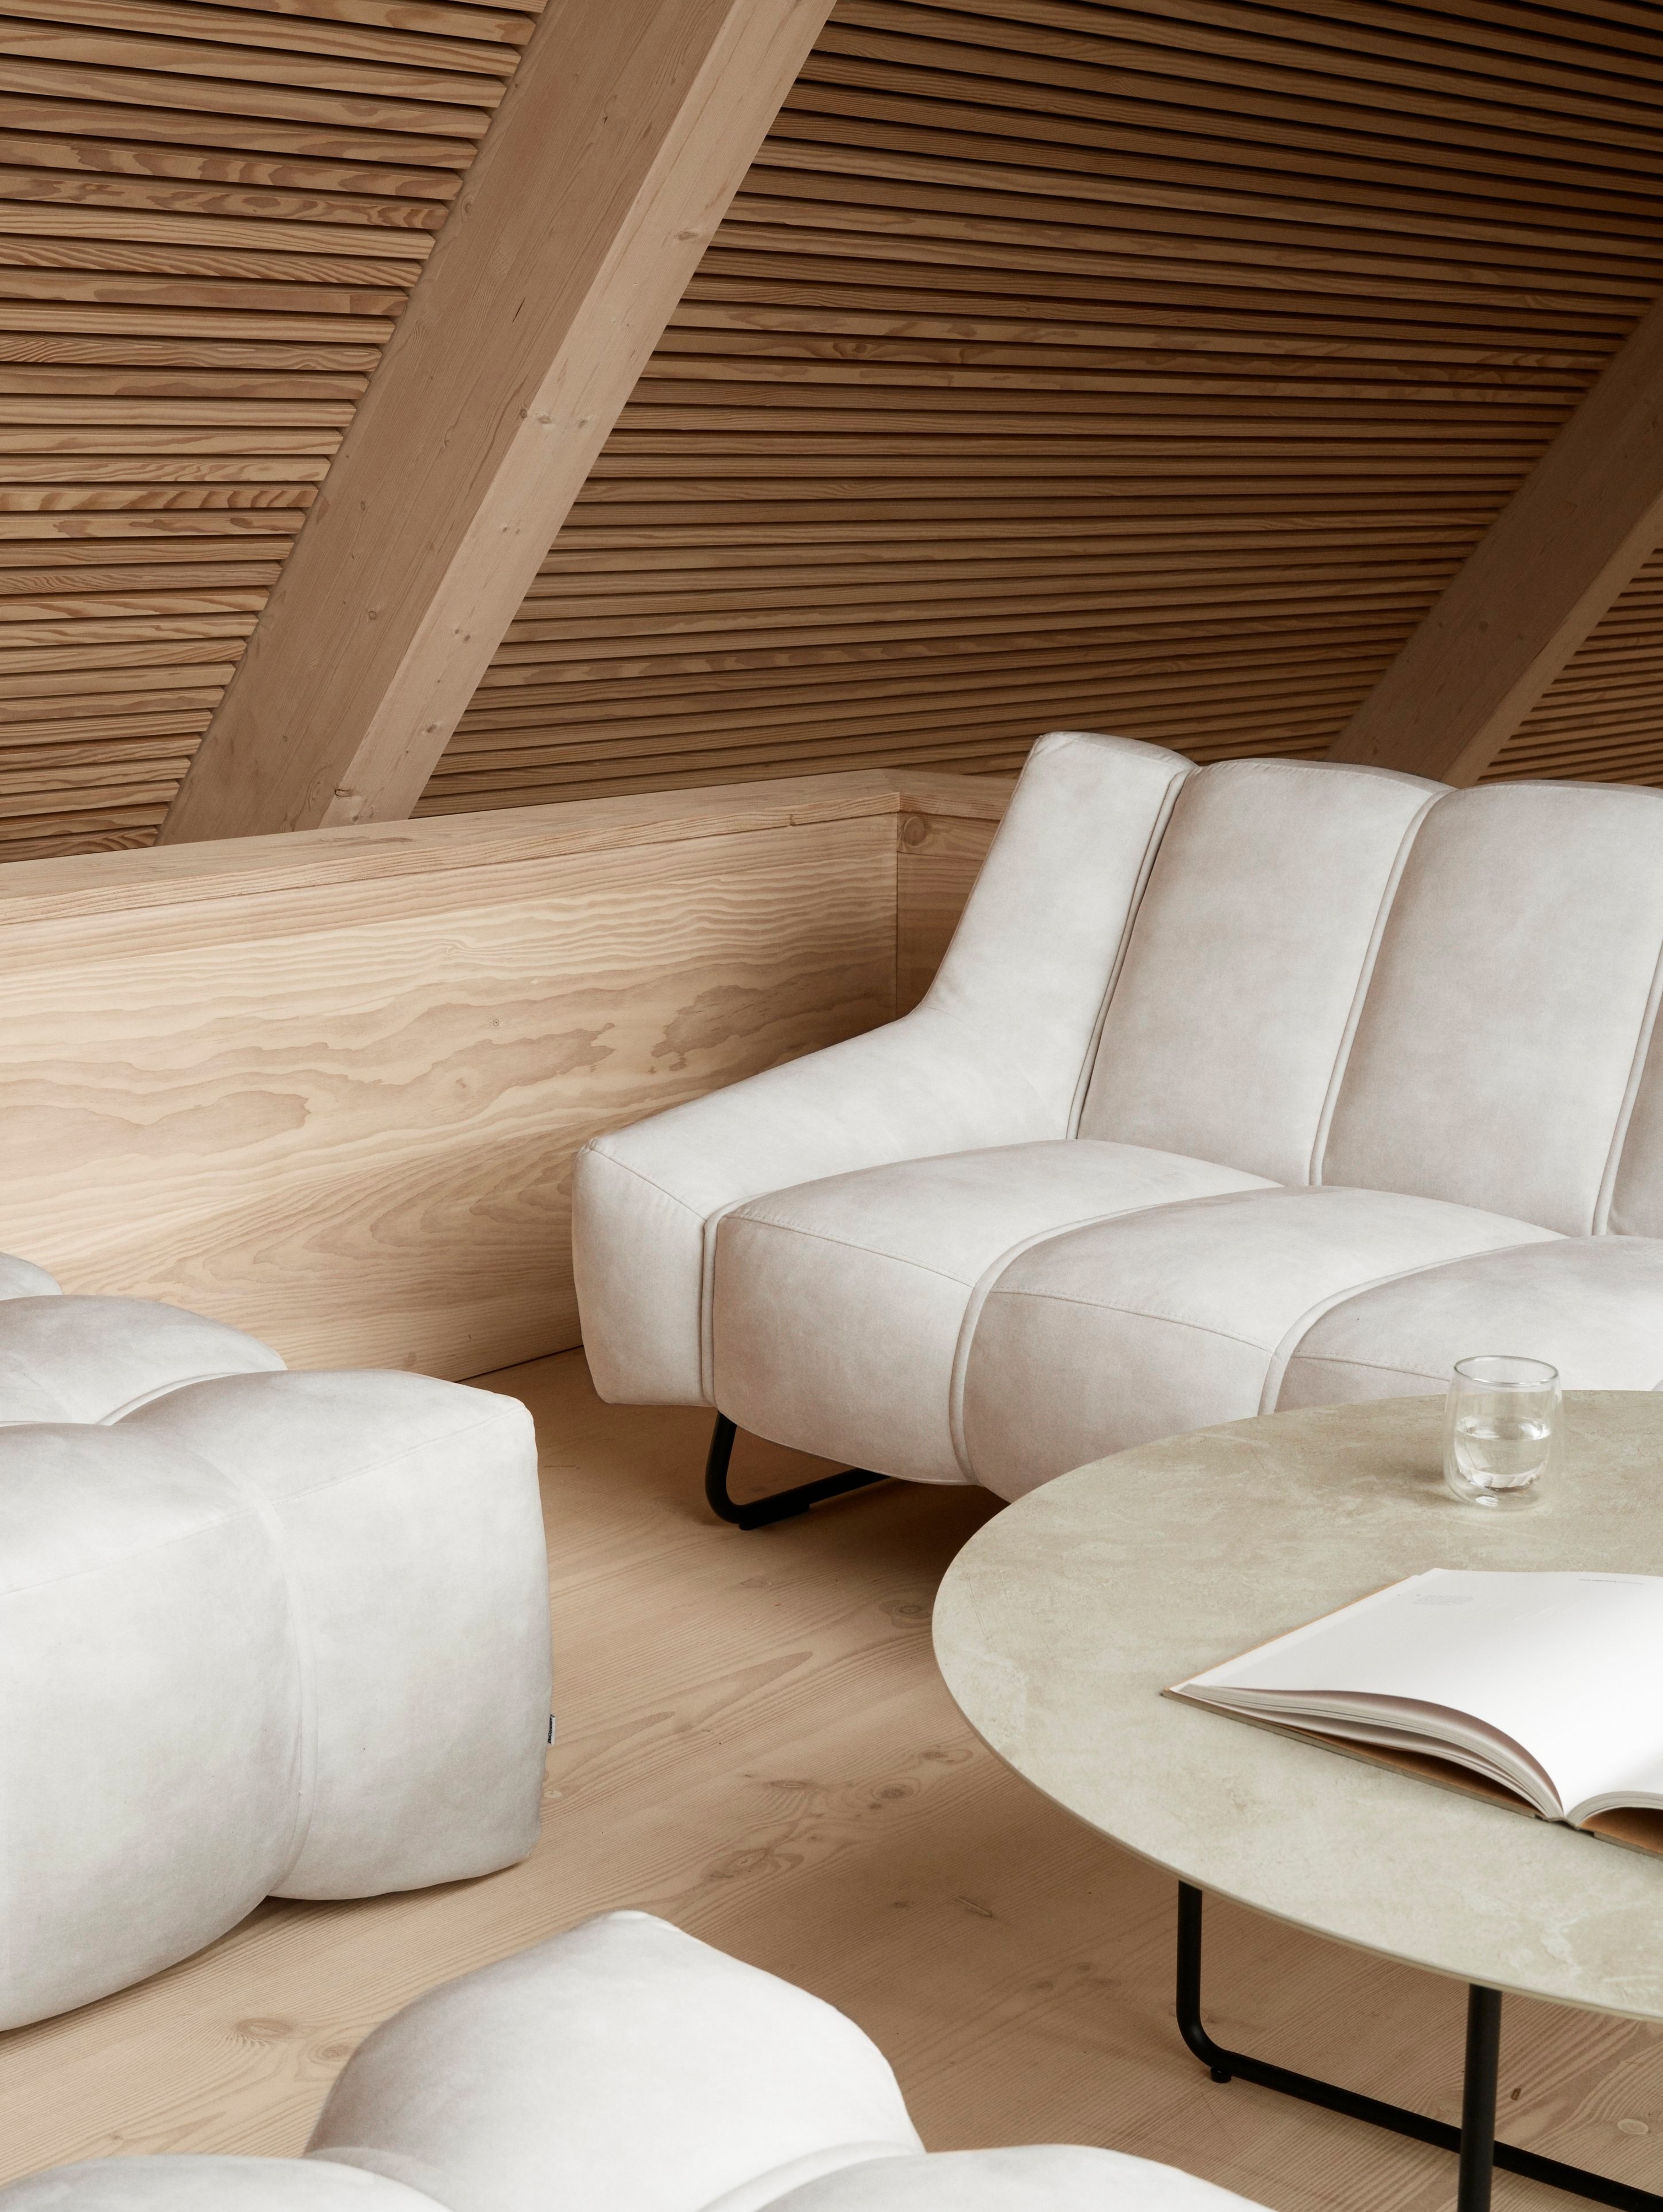 Sala de estar de estilo escandinavo com o sofá Nawabari e puffs a condizer.